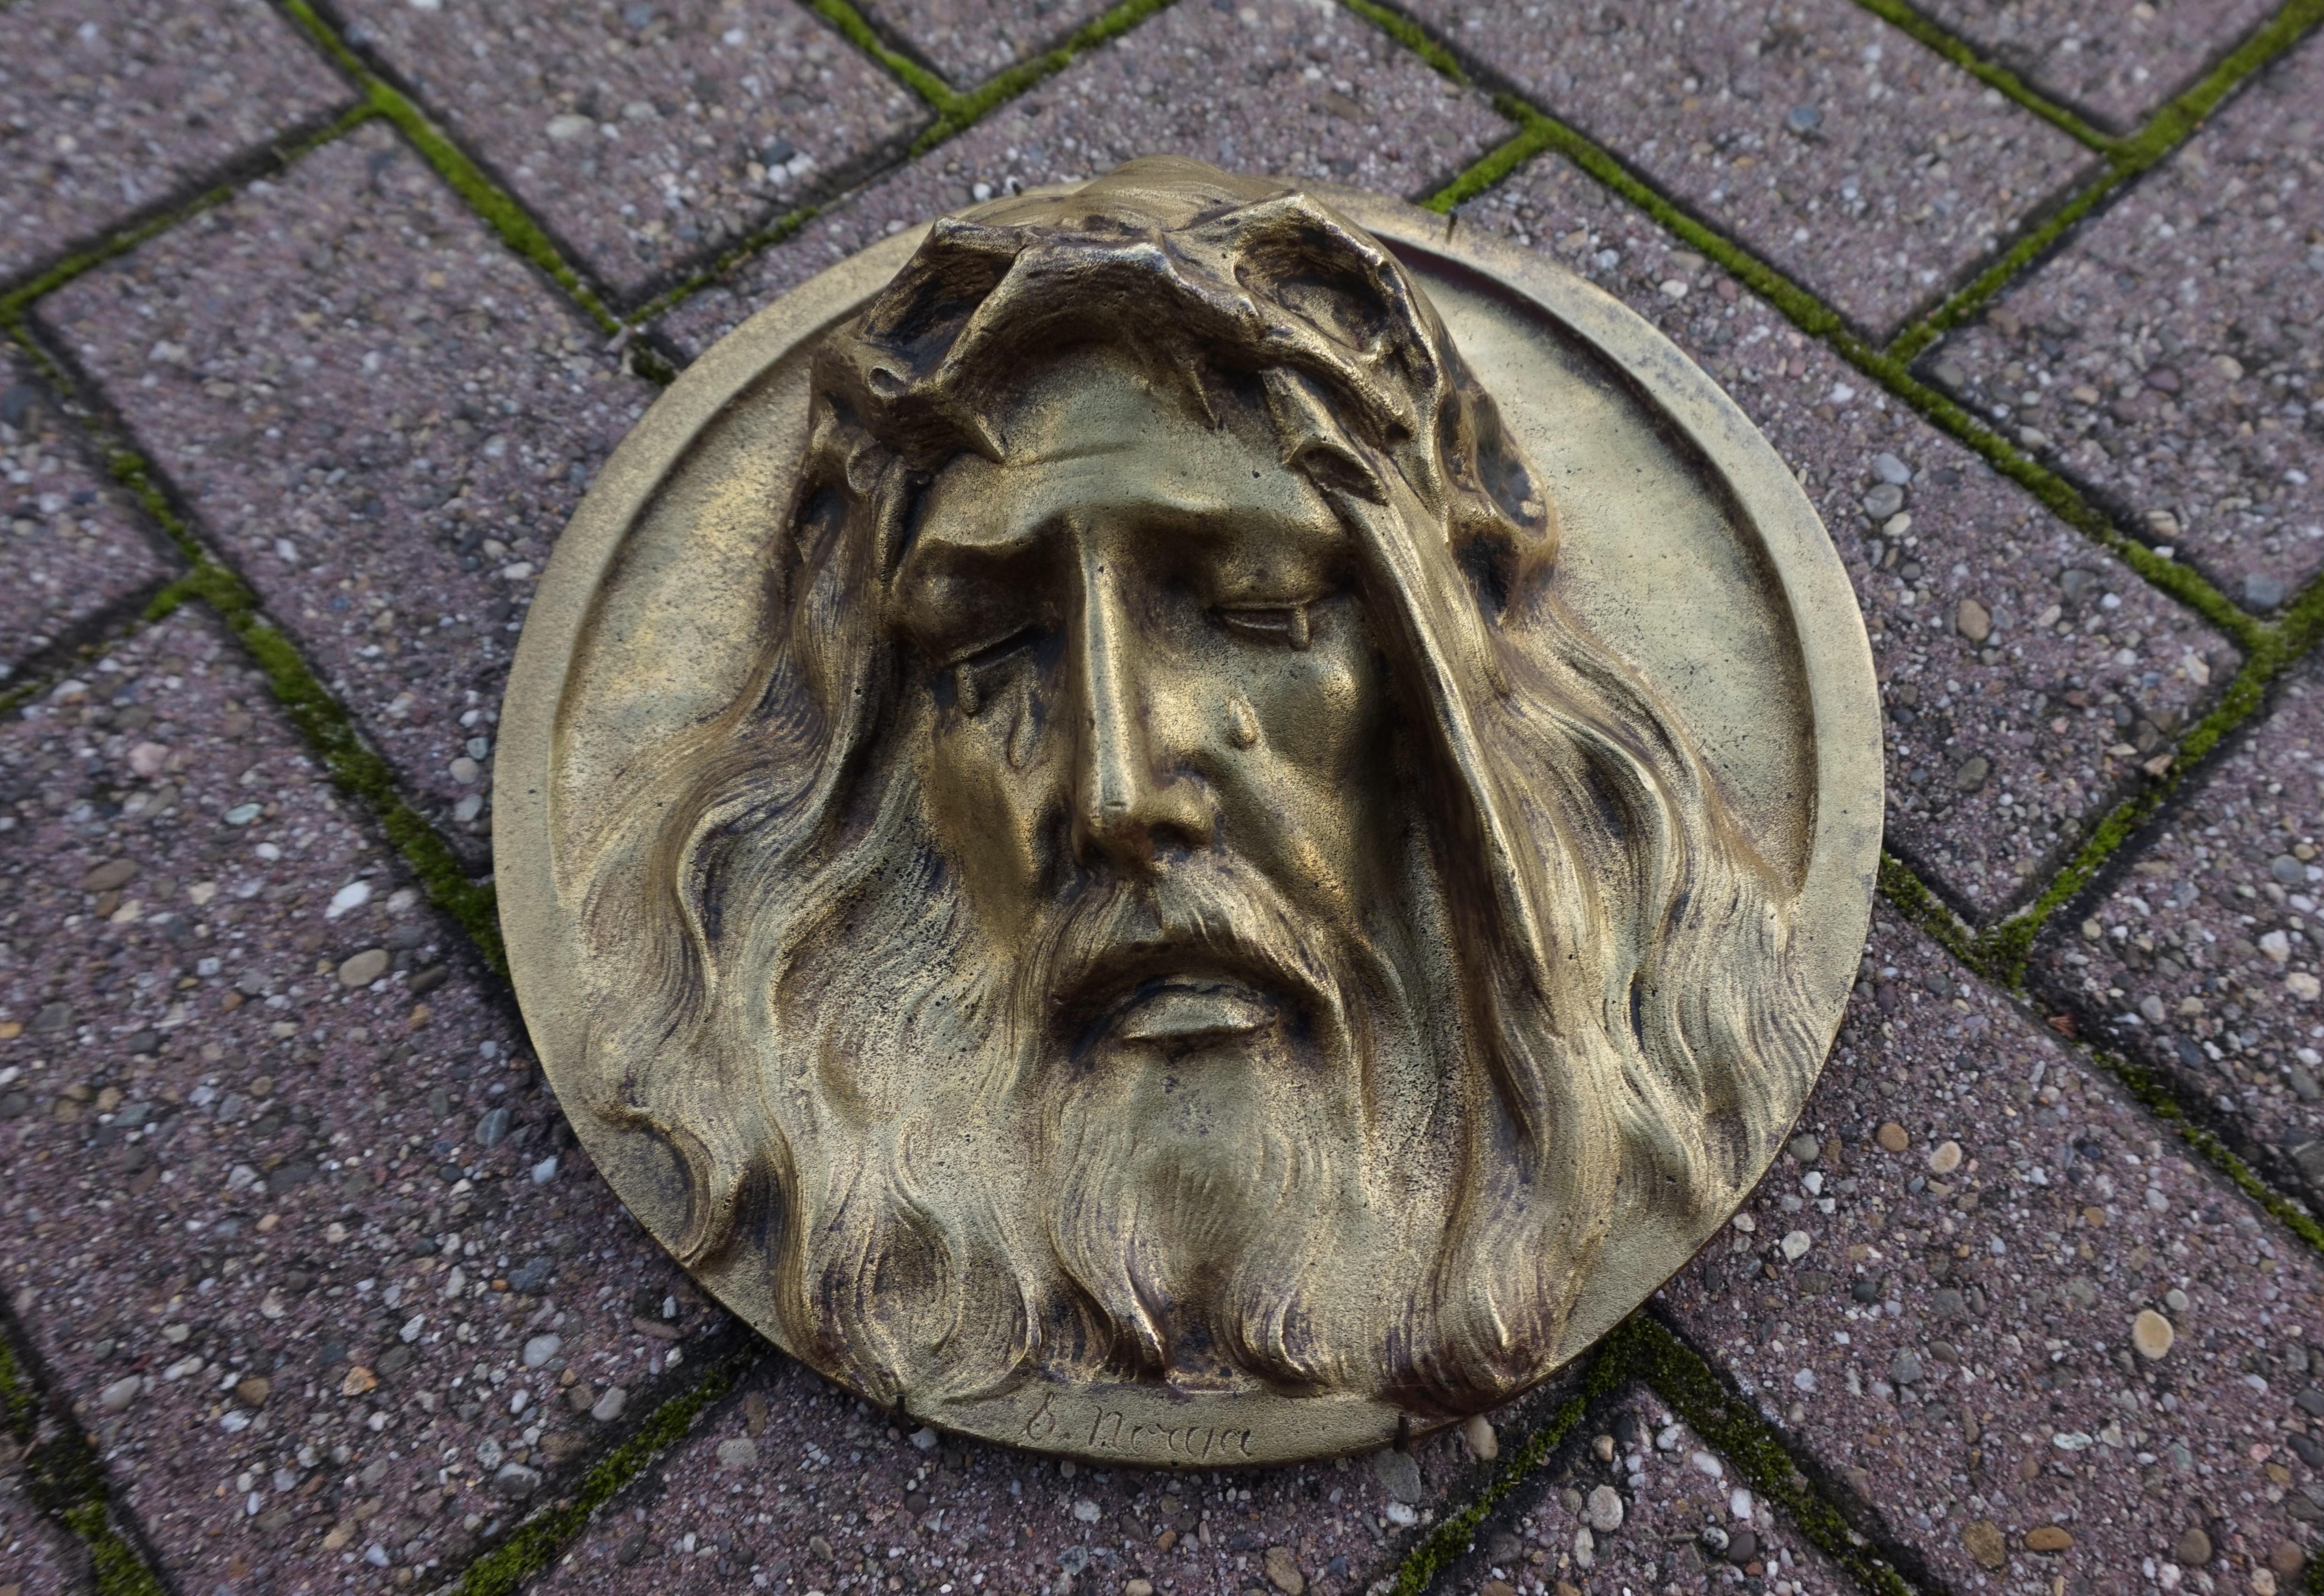 Petite mais impressionnante, sculpture circulaire en bronze de Jésus, en profond relief.

Ayant vendu de nombreuses œuvres d'art religieux, nous avons immédiatement remarqué les larmes qui se trouvent sur cette plaque murale du Christ. Cette